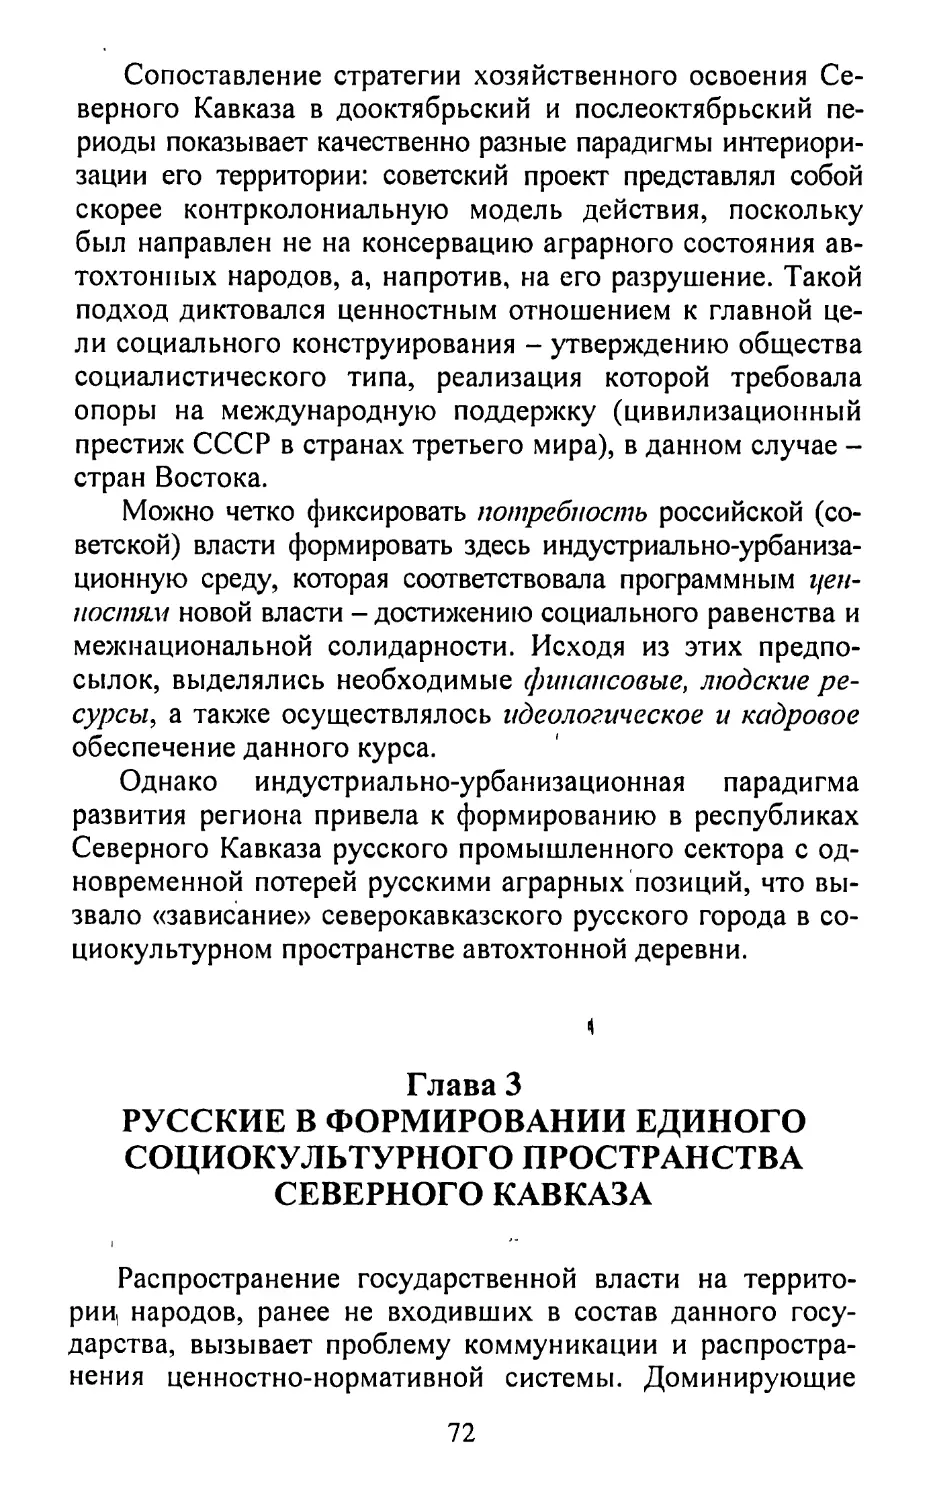 Глава 3. Русские в формировании единого социокультурного пространства Северного Кавказа